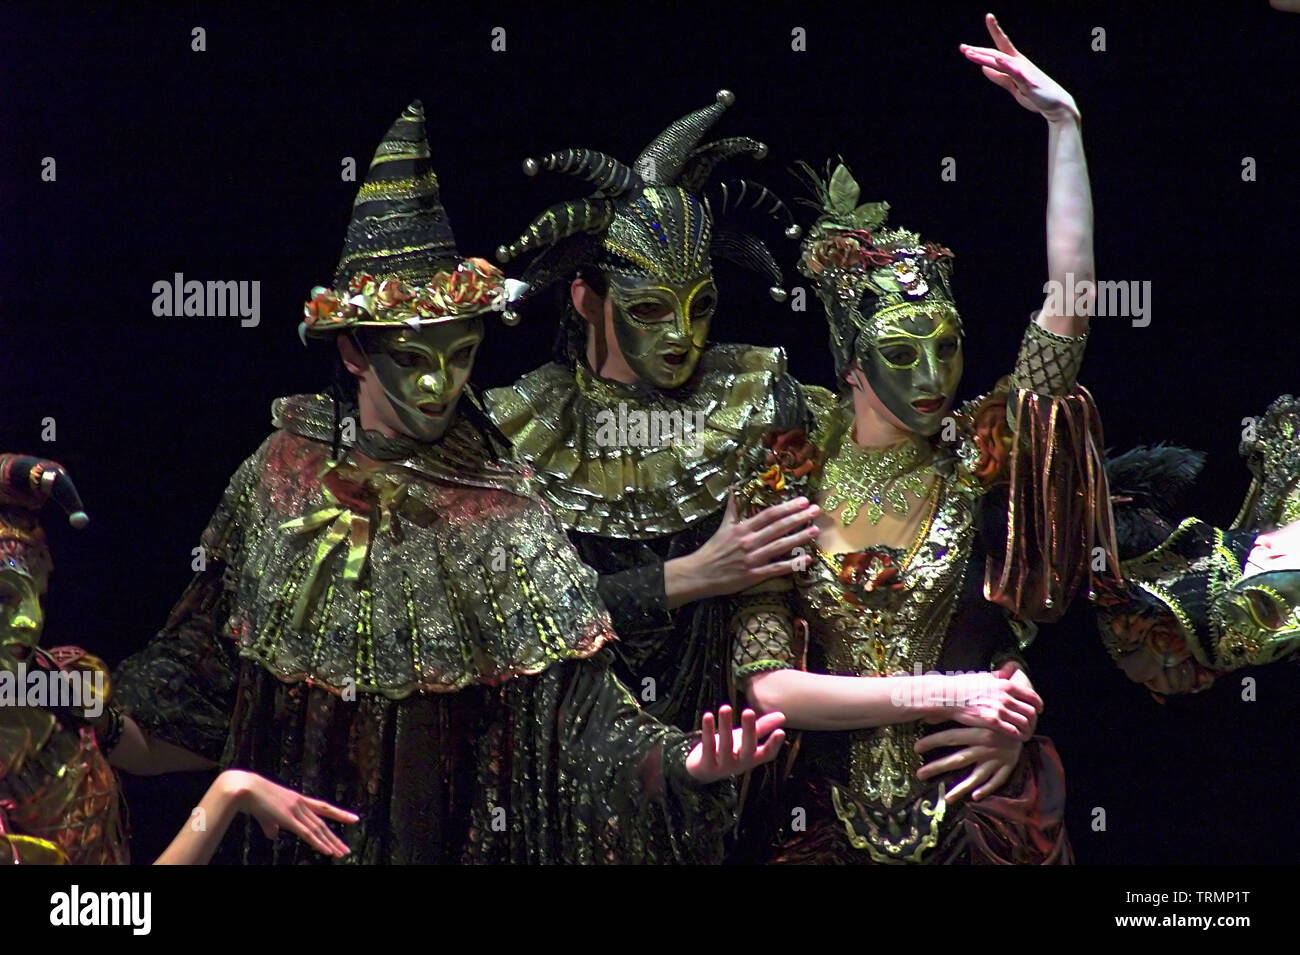 Tänzerinnen und Tänzer in venezianischen Masken - eine unbekannte Ballettaufführung. Tänzer in venezianischen Masken - eine unbekannte Ballettaufführung. Tancerze w maskach. Stockfoto